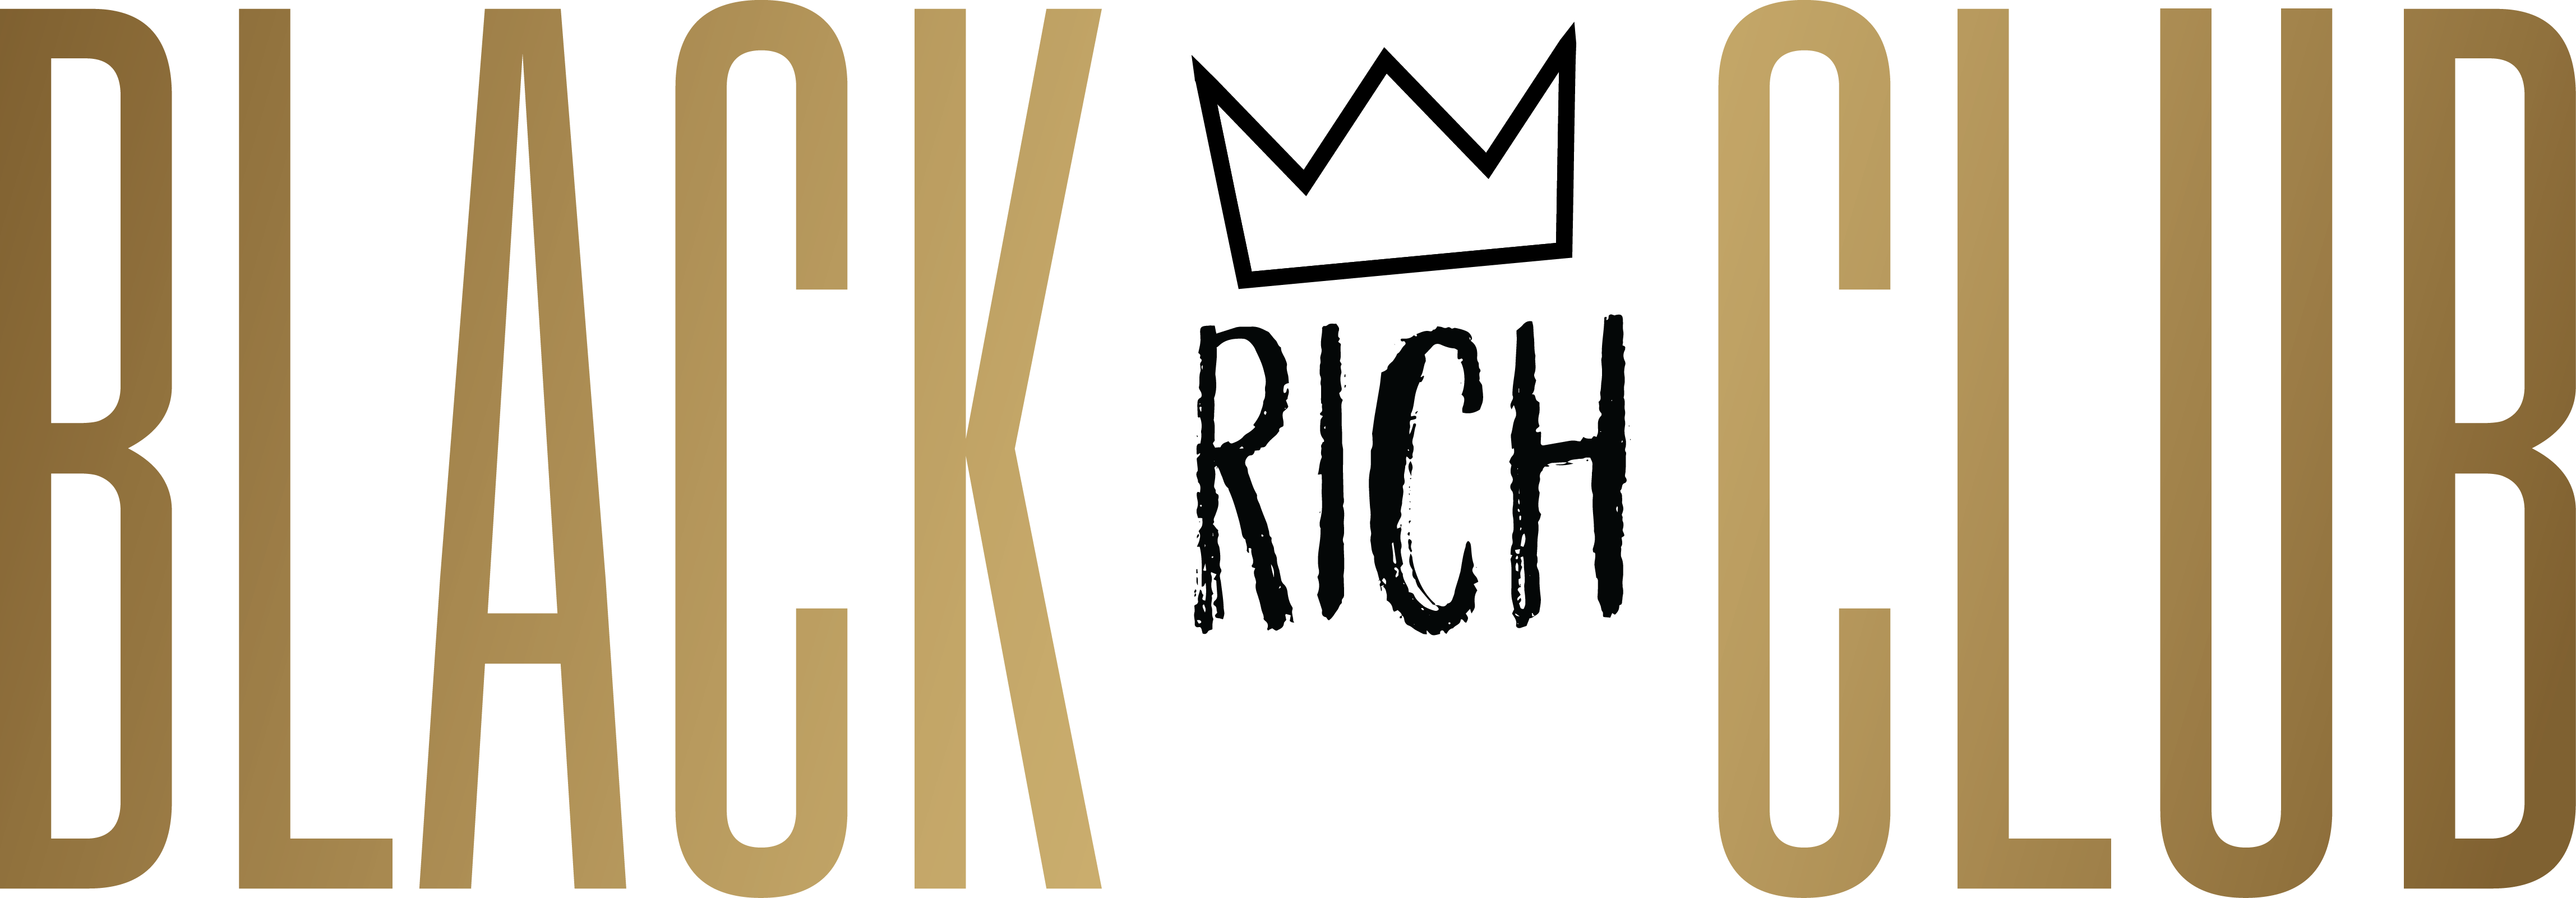 Black Rich Club